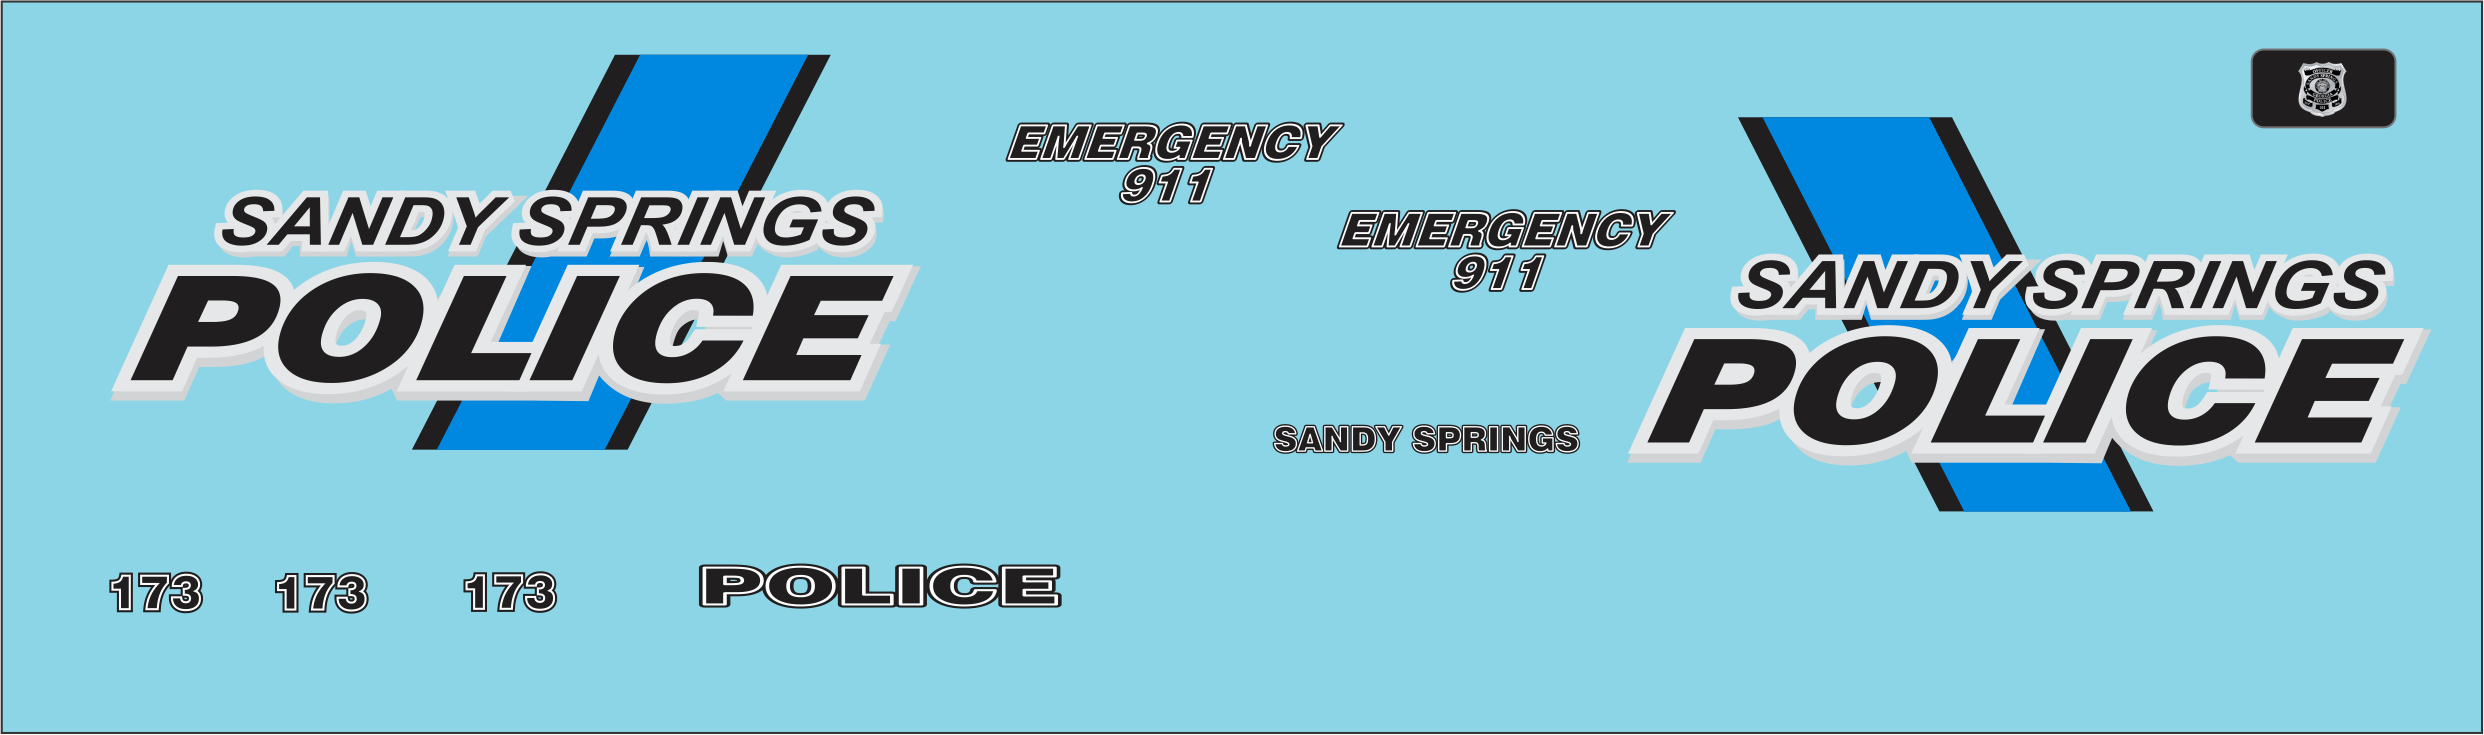 1/24-1/25 Sandy Springs, Georgia Police Department waterslide decals